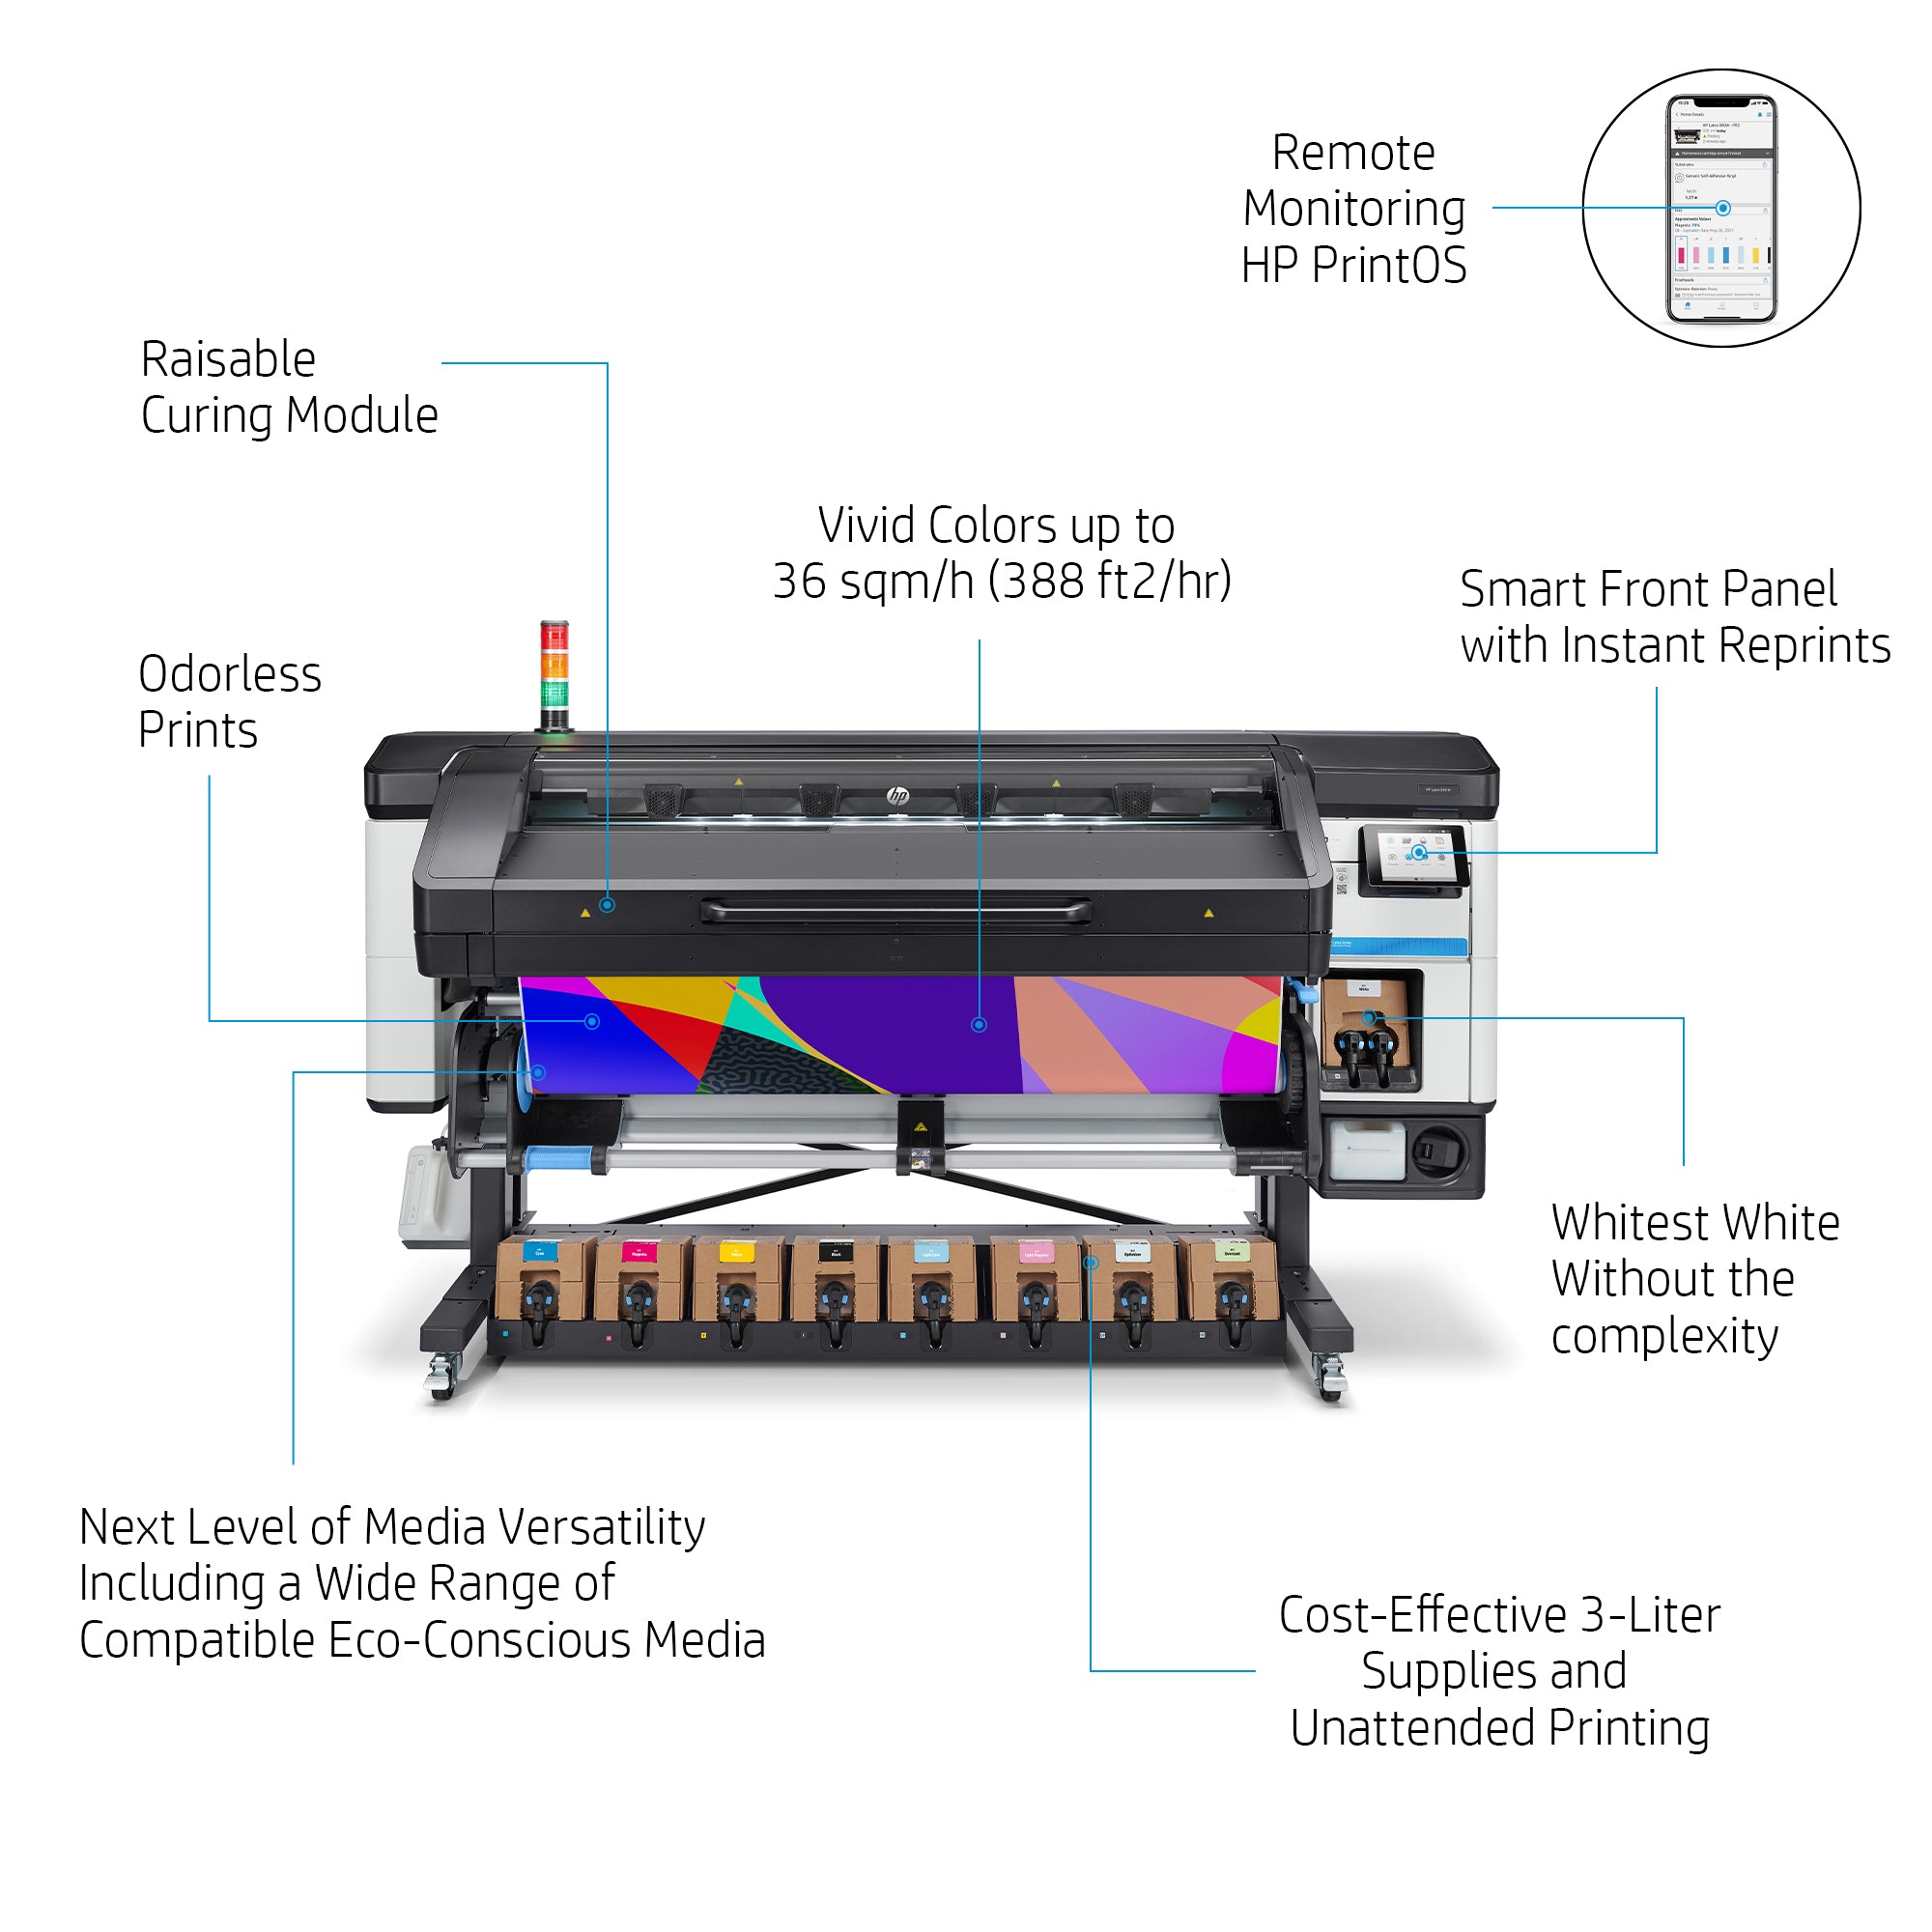 HP LATEX 800 W Printer